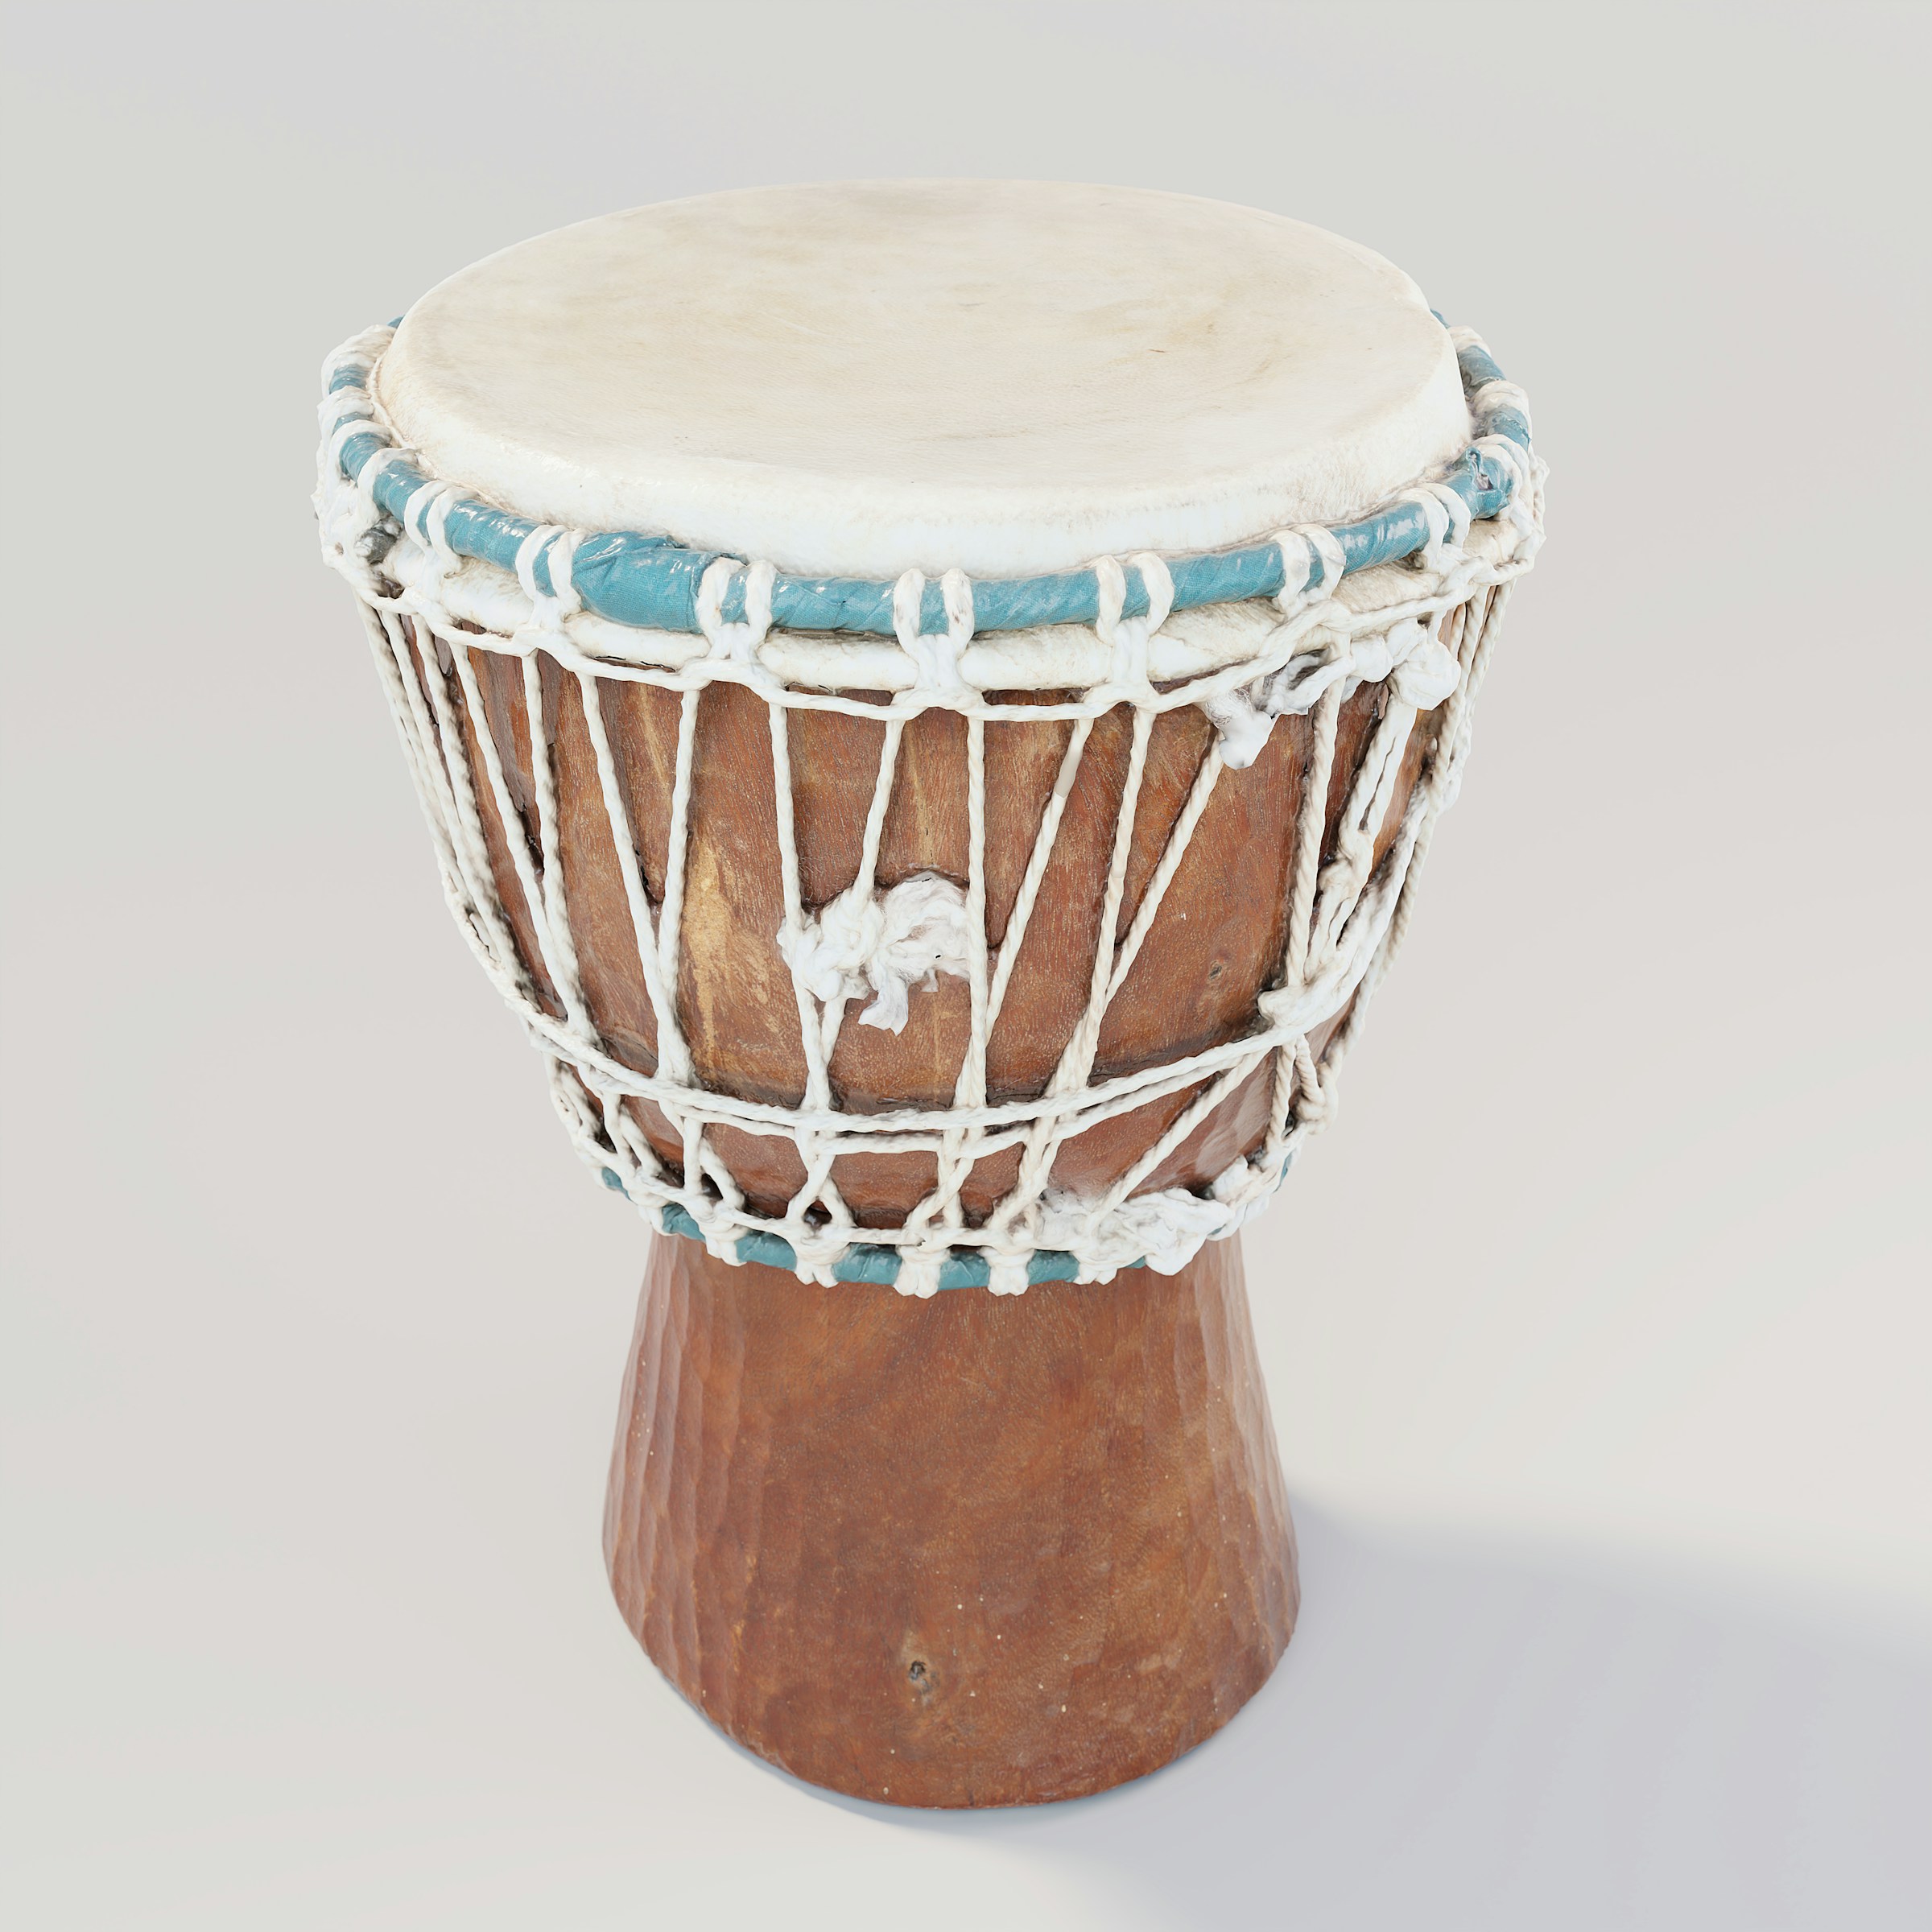 Un tambour en bois | Source : Unsplash